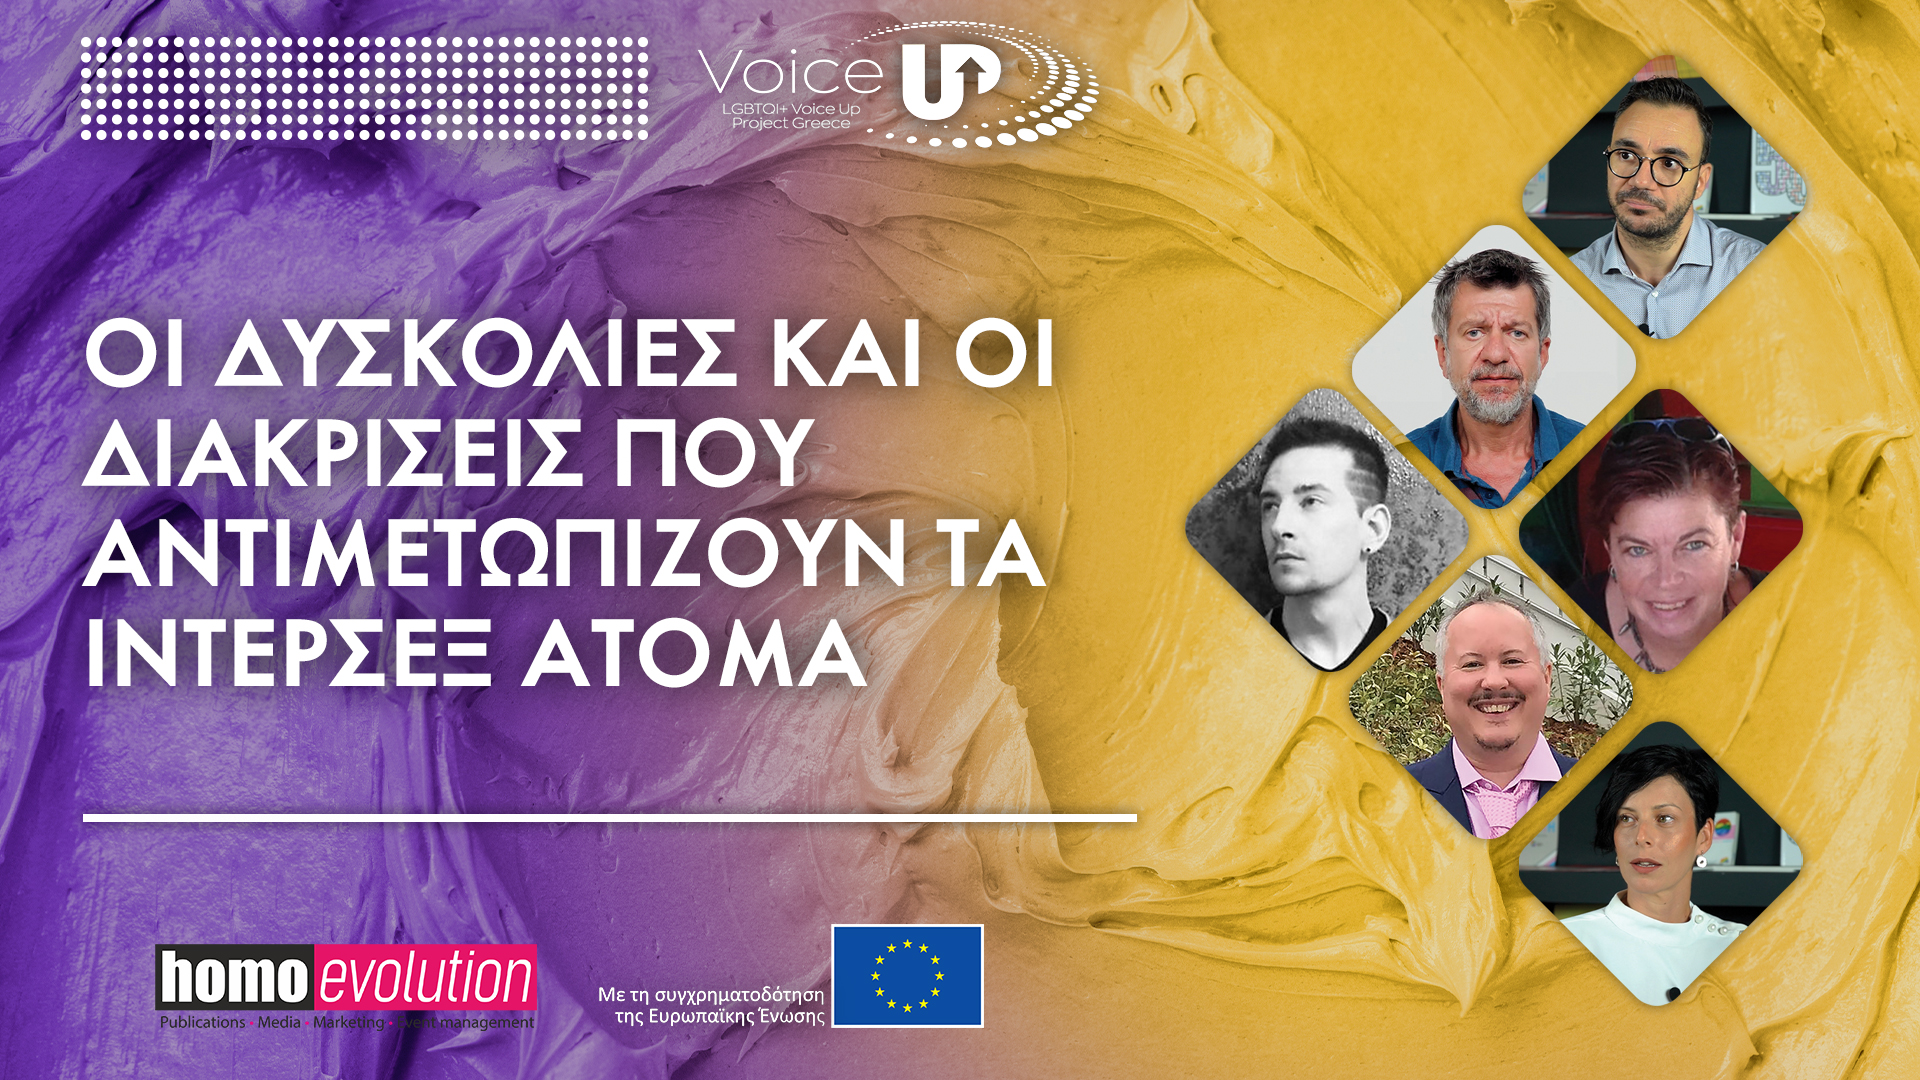 Εικόνα σε Μωβ και κίτρινο χρώμα που περιέχει τα τον τίτλο του βίντεο "Οι Δυσκολίες και οι Διακρίσεις που αντιμετωπίζουν τα Ίντερσεξ άτομα", τα άτομα που συμμετέχουν σε αυτό καθώς και τα λογότυπα της Homo Evolution, της Ευρωπαϊκής Ένωσης και του Voice Up